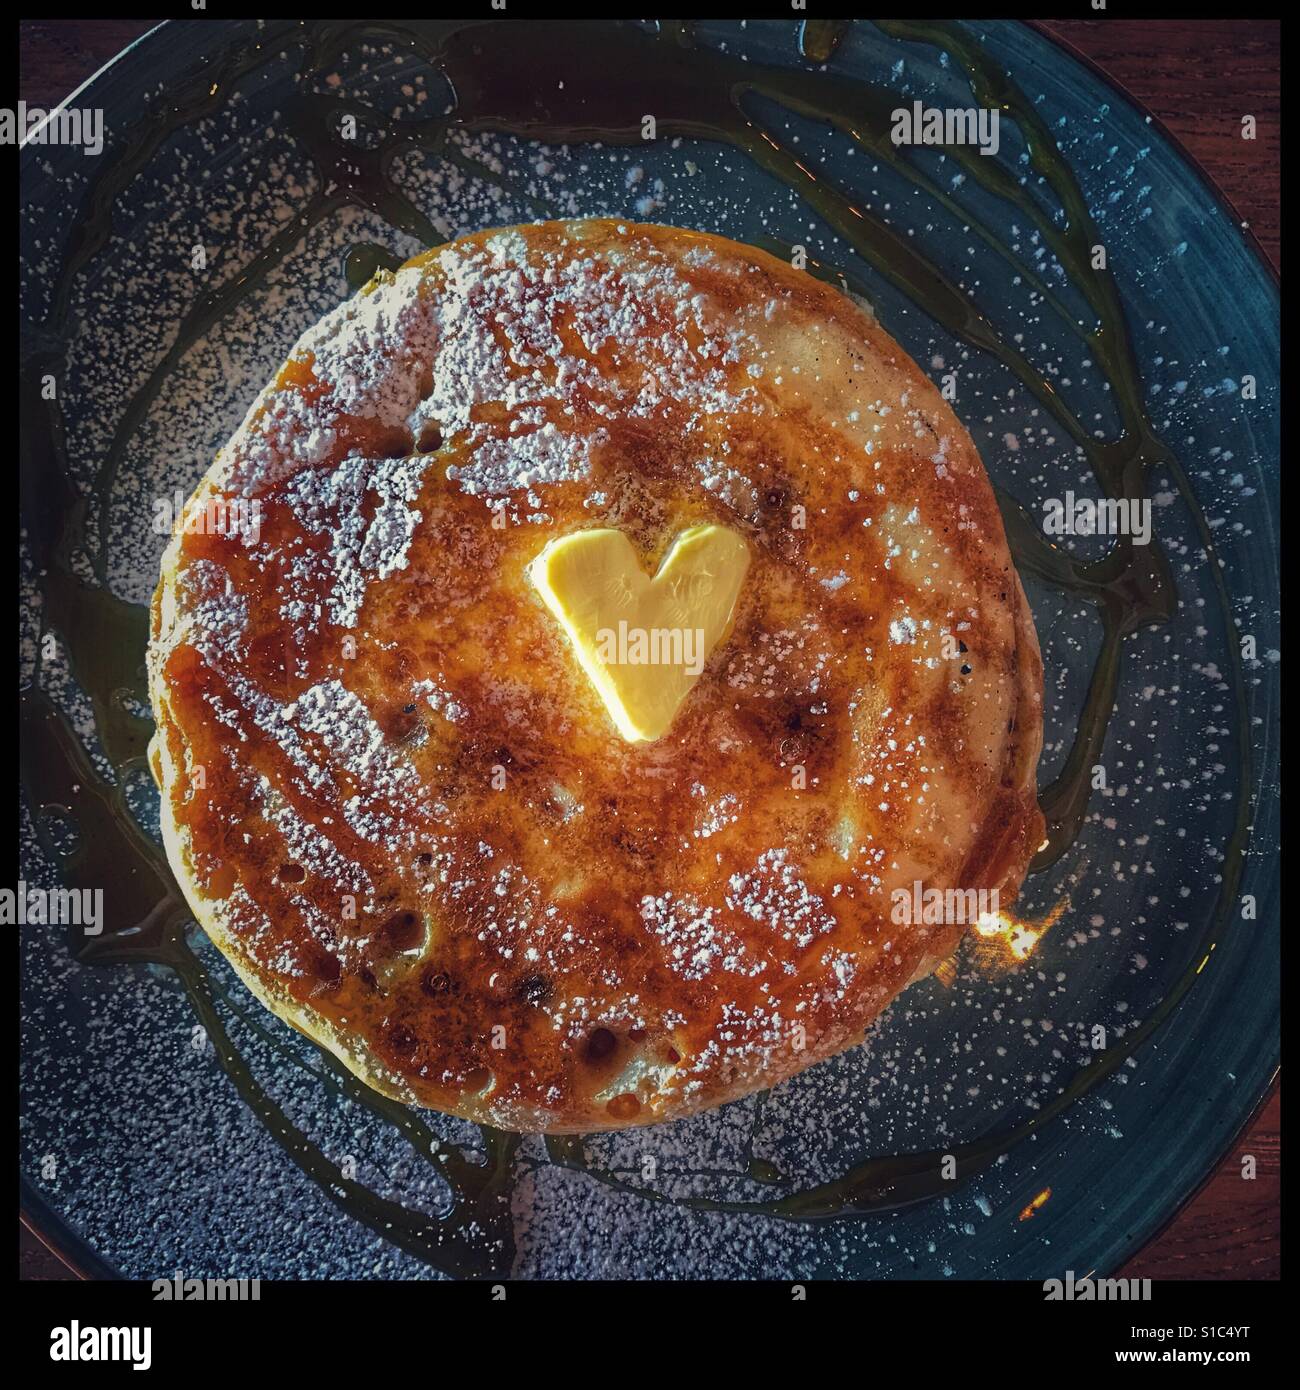 Pfannkuchen mit Ahornsirup Stockfotografie - Alamy